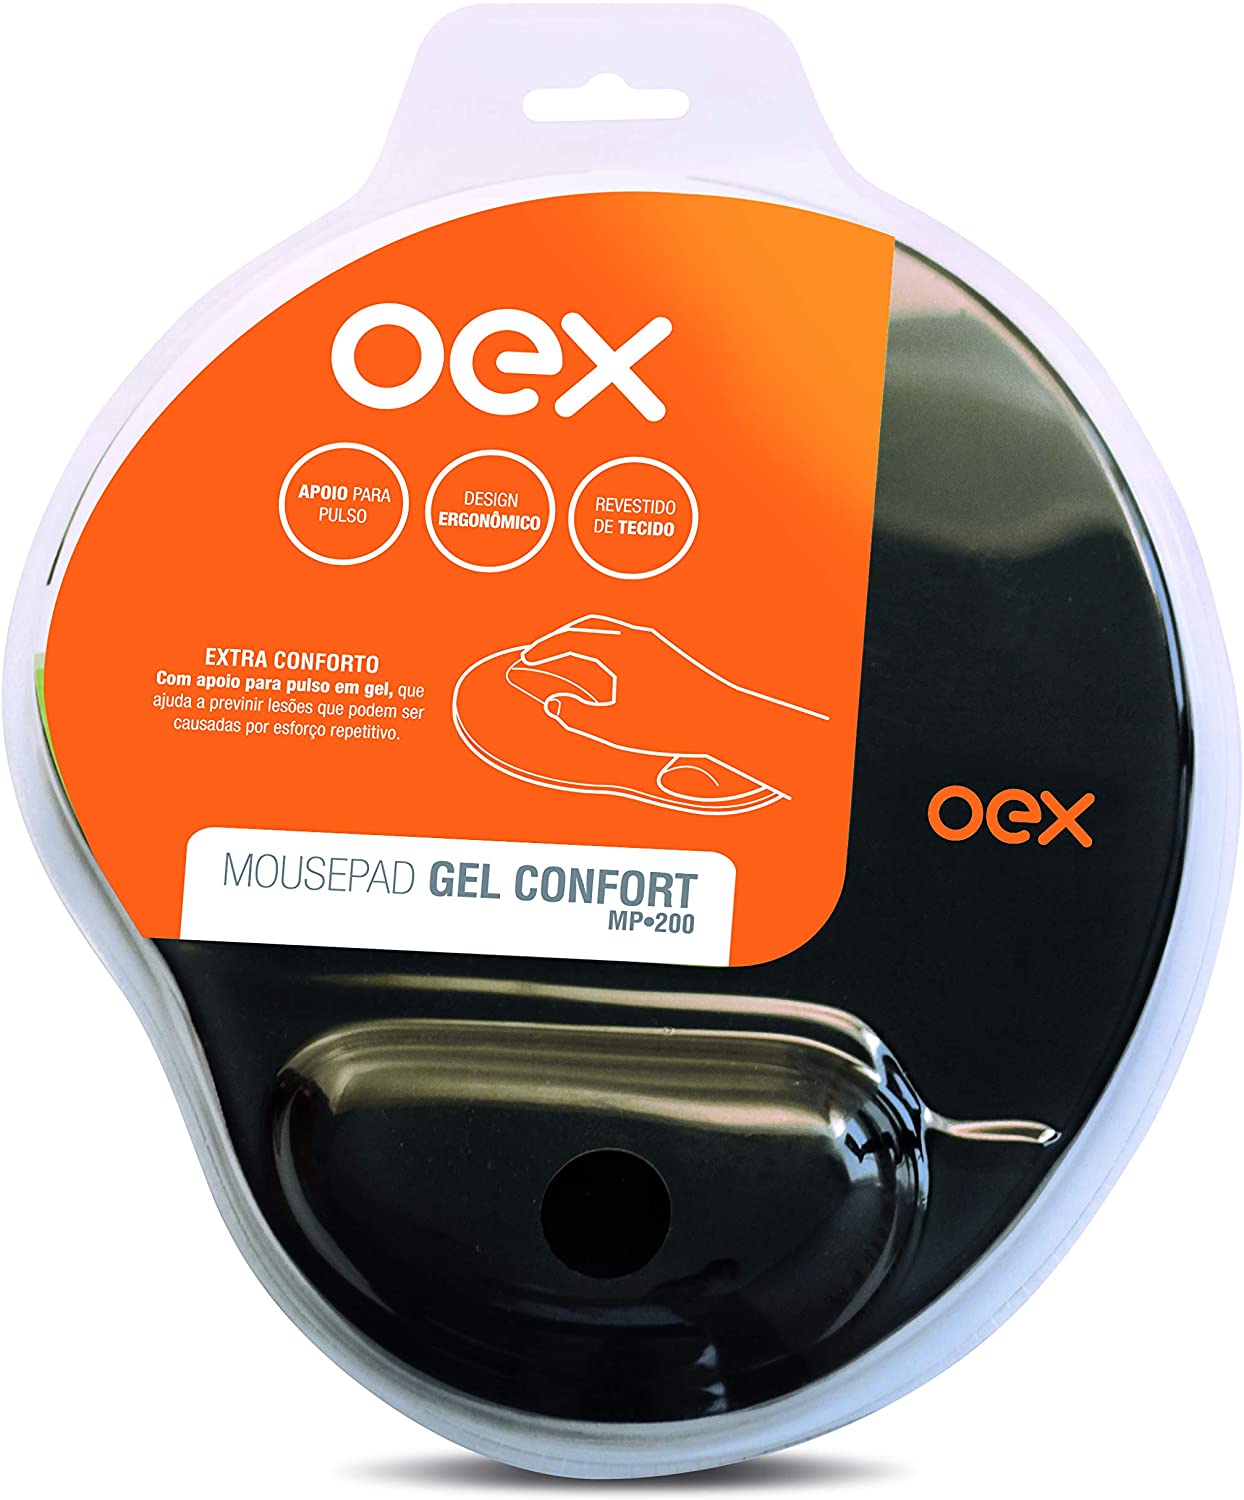 Mouse Pad OEX Gel Confort MP200 Preto com Apoio em Gel - 1